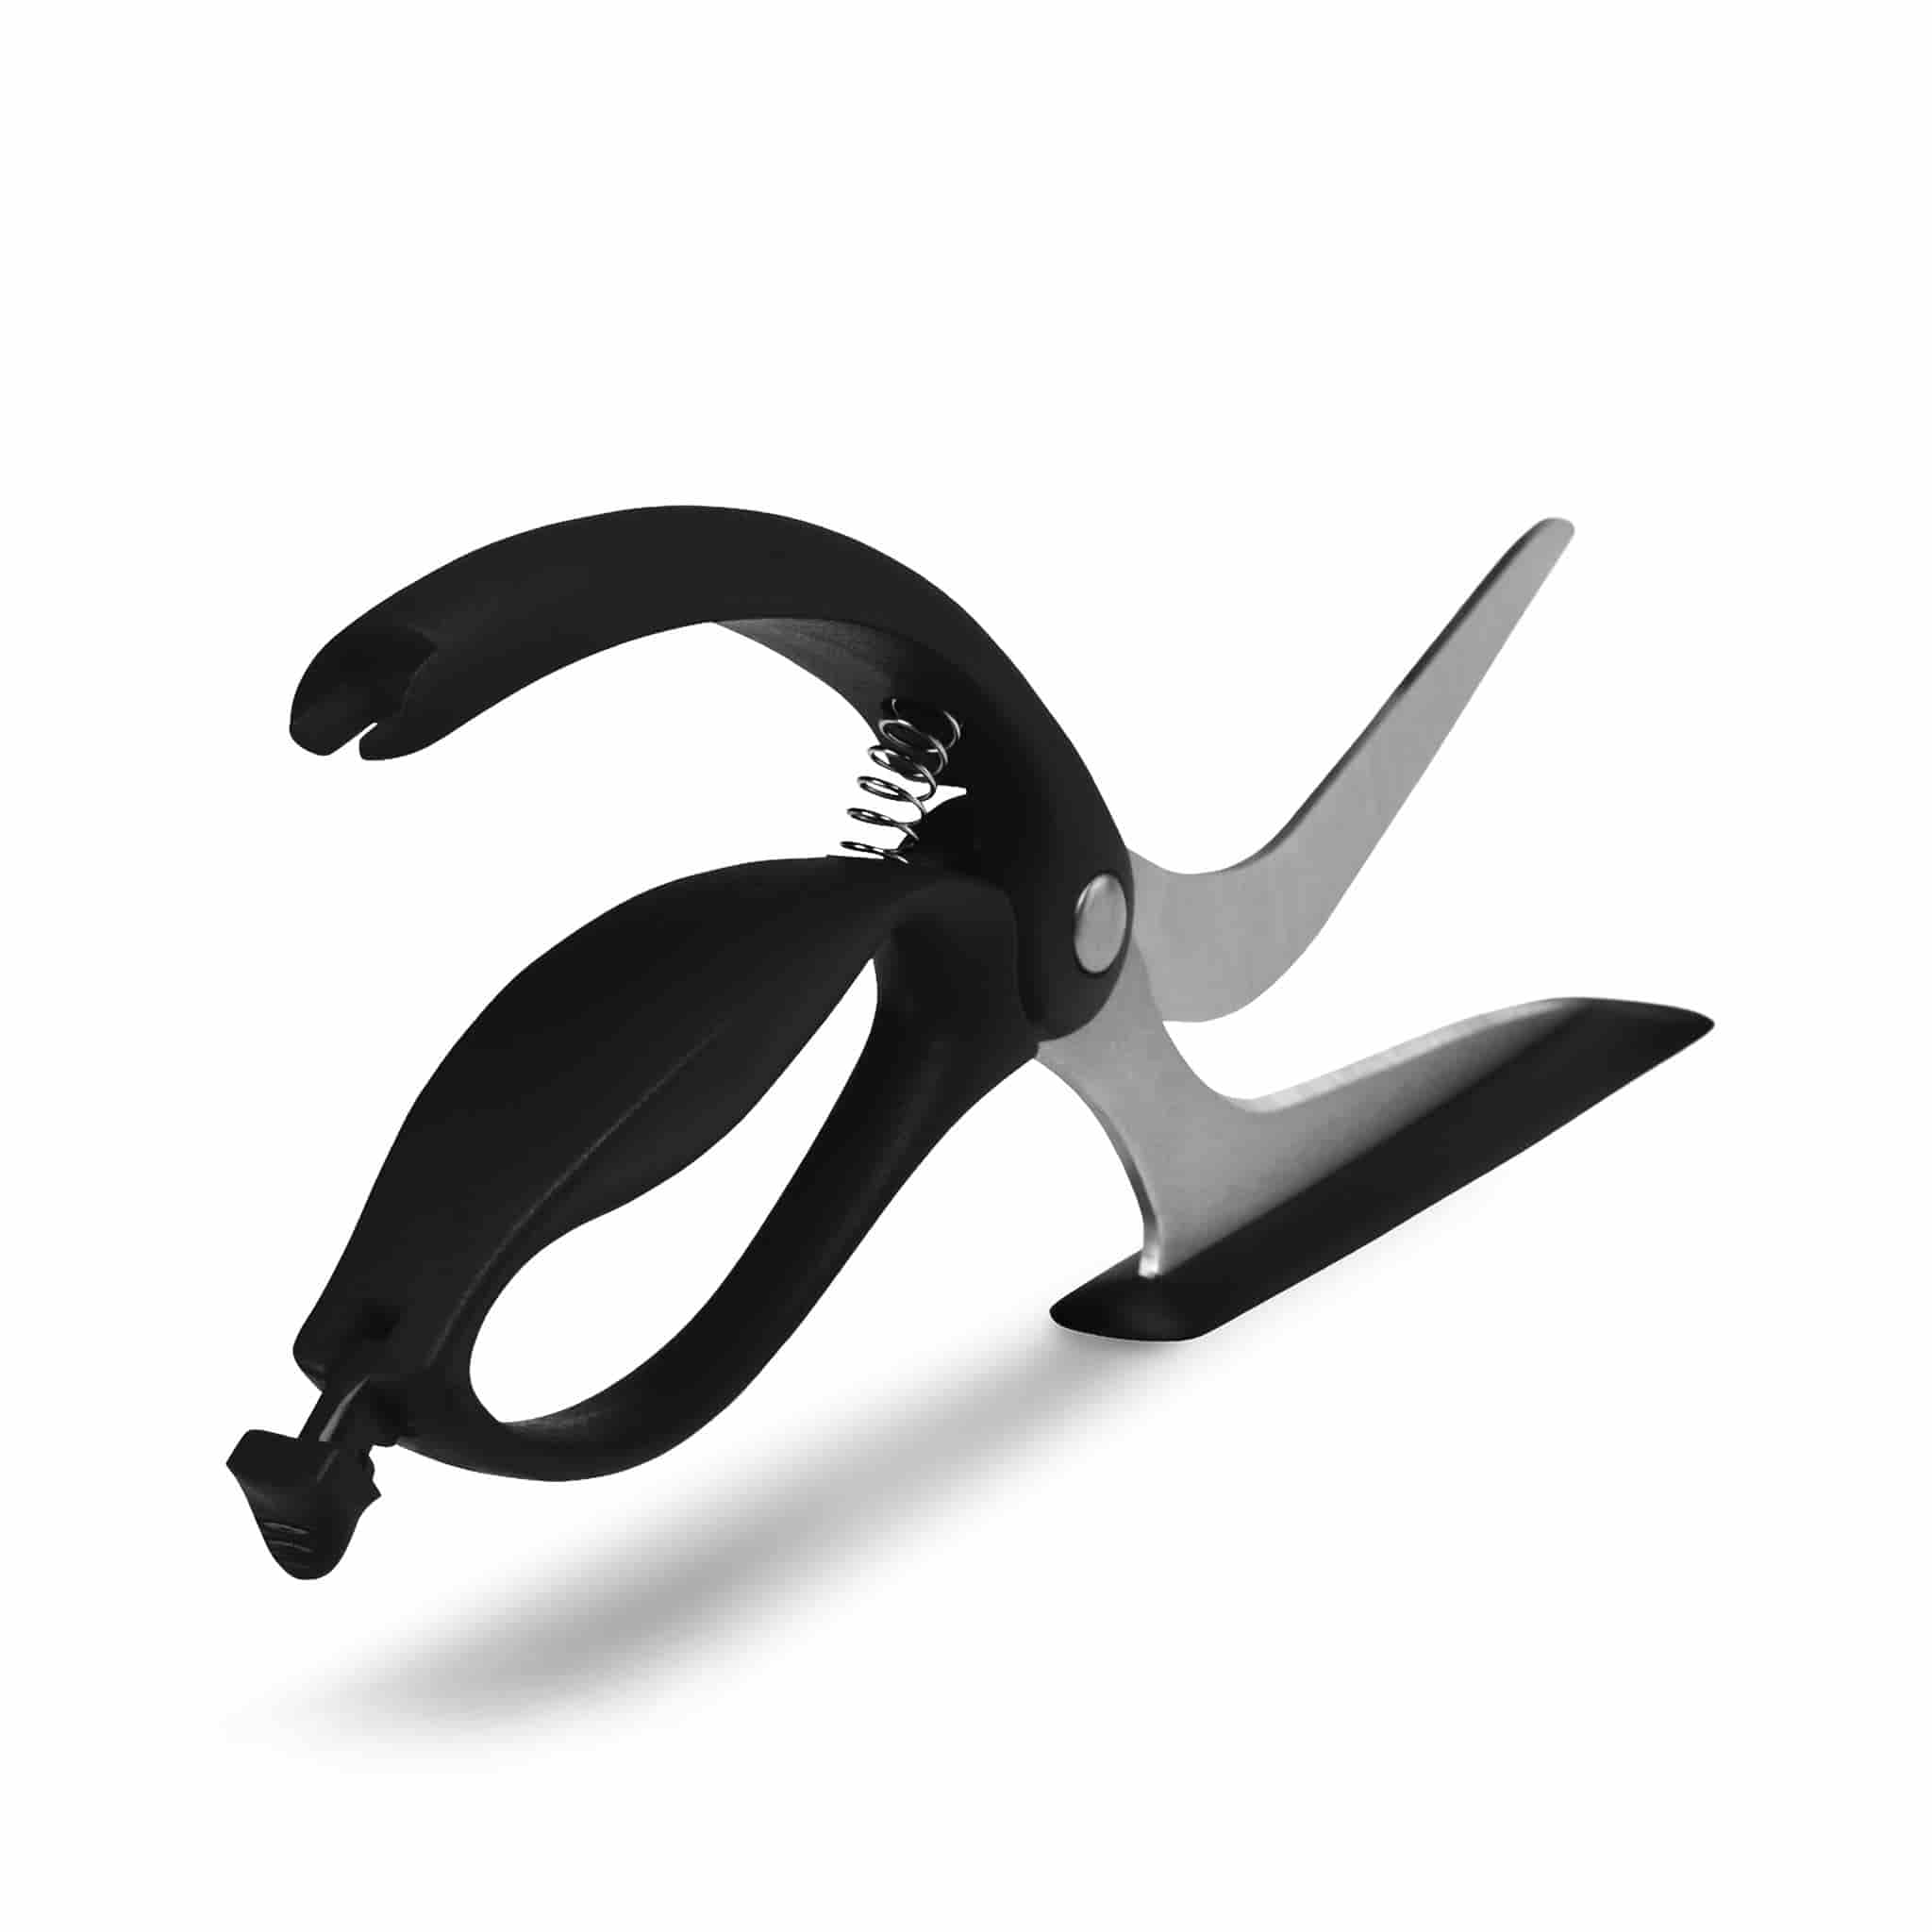 Buy 67 Layer Kitchen Scissors - UK's Best Online Price